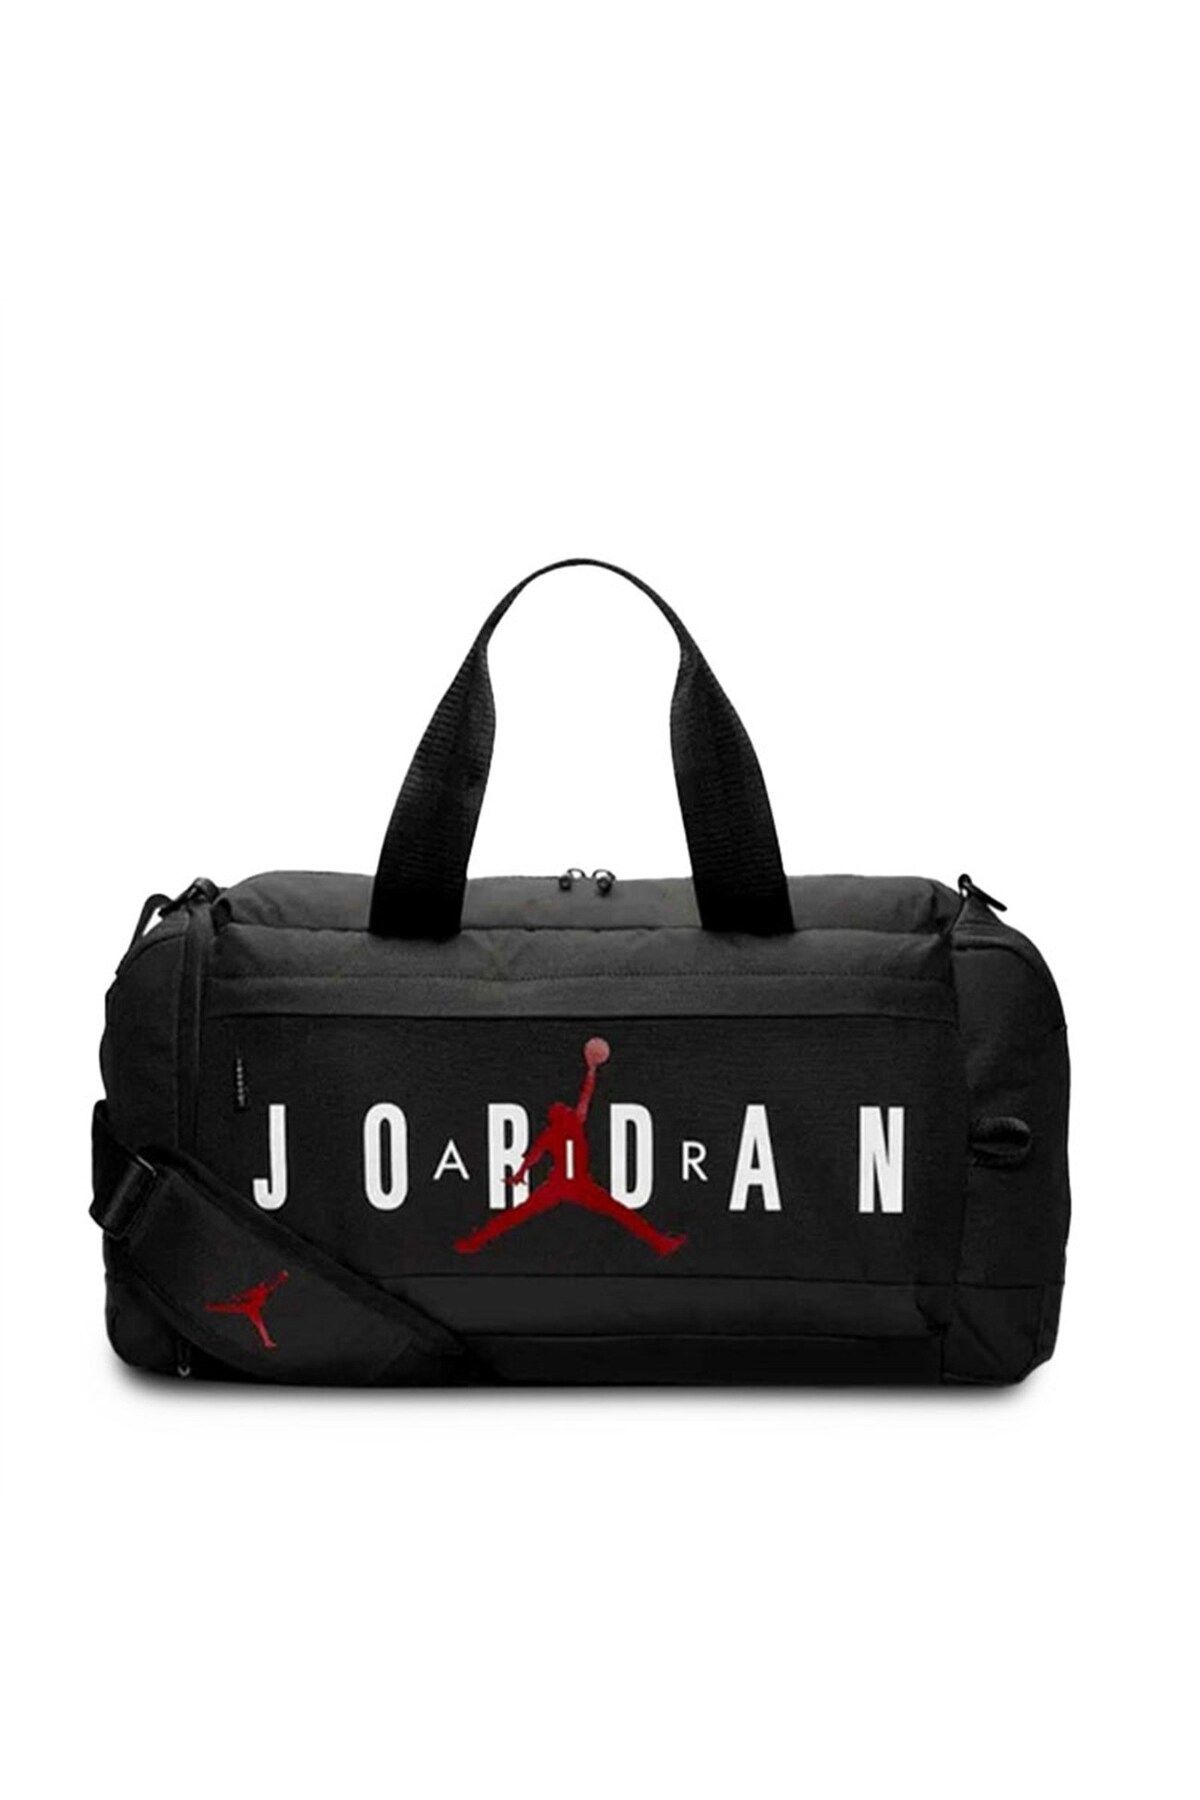 Nike Jordan Velocıty Duffle Duffel spor çantası